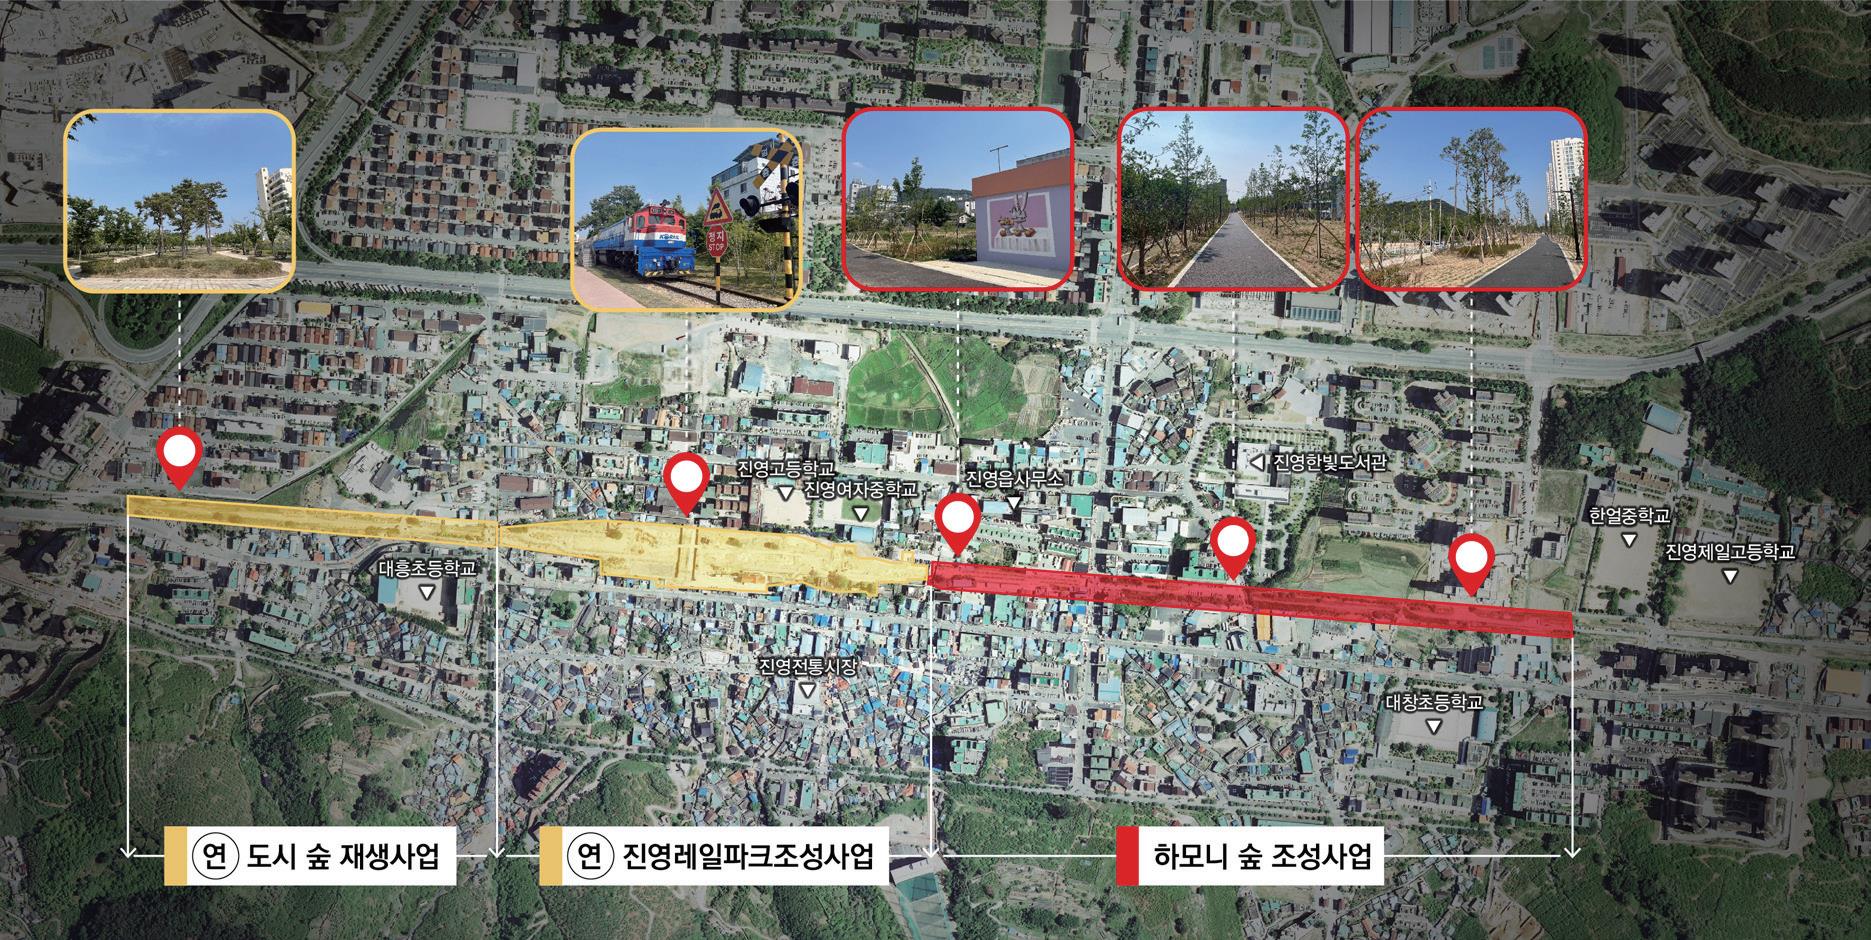 김해시, 경전선 폐선부지 활용 ‘진영 하모니숲길’ 조성 계획도